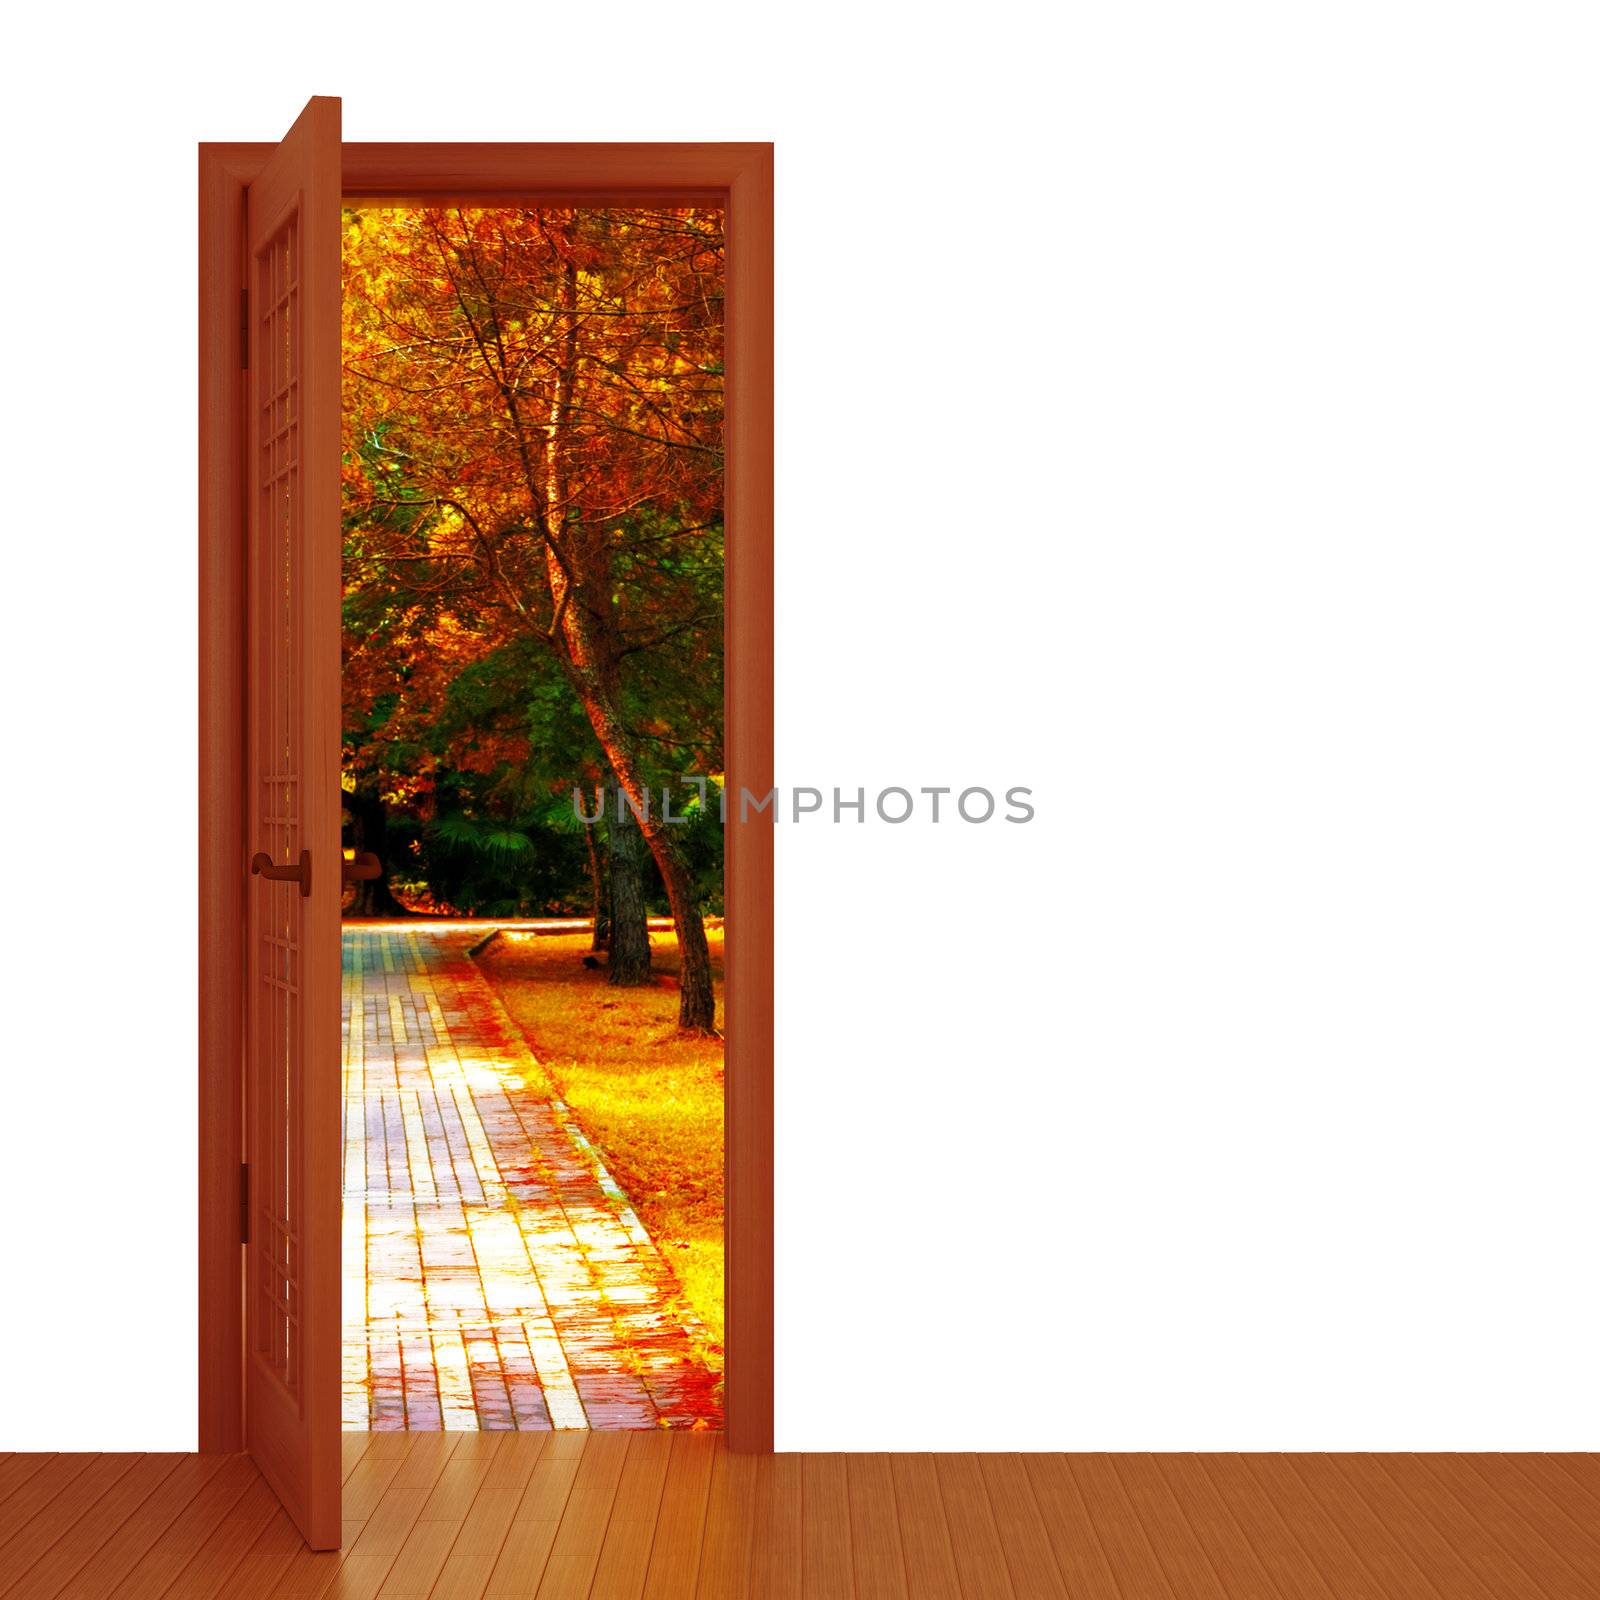 unclosed door and beautiful autumn landscape